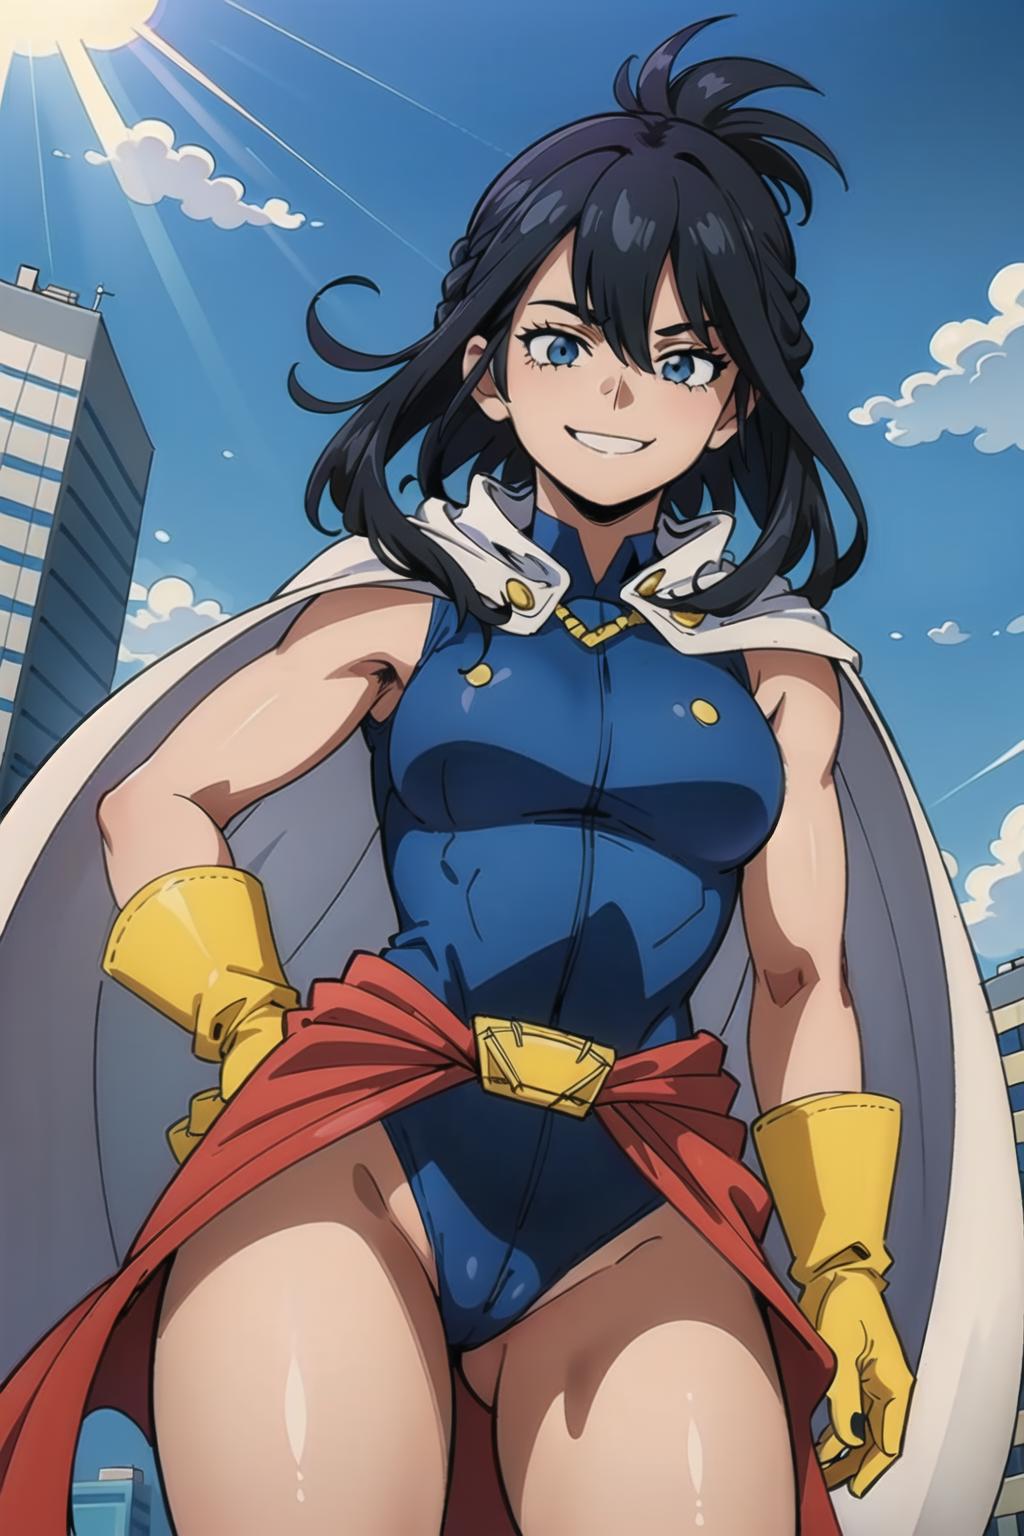 Nana Shimura [My Hero Academia] Character LoRA image by Hydros